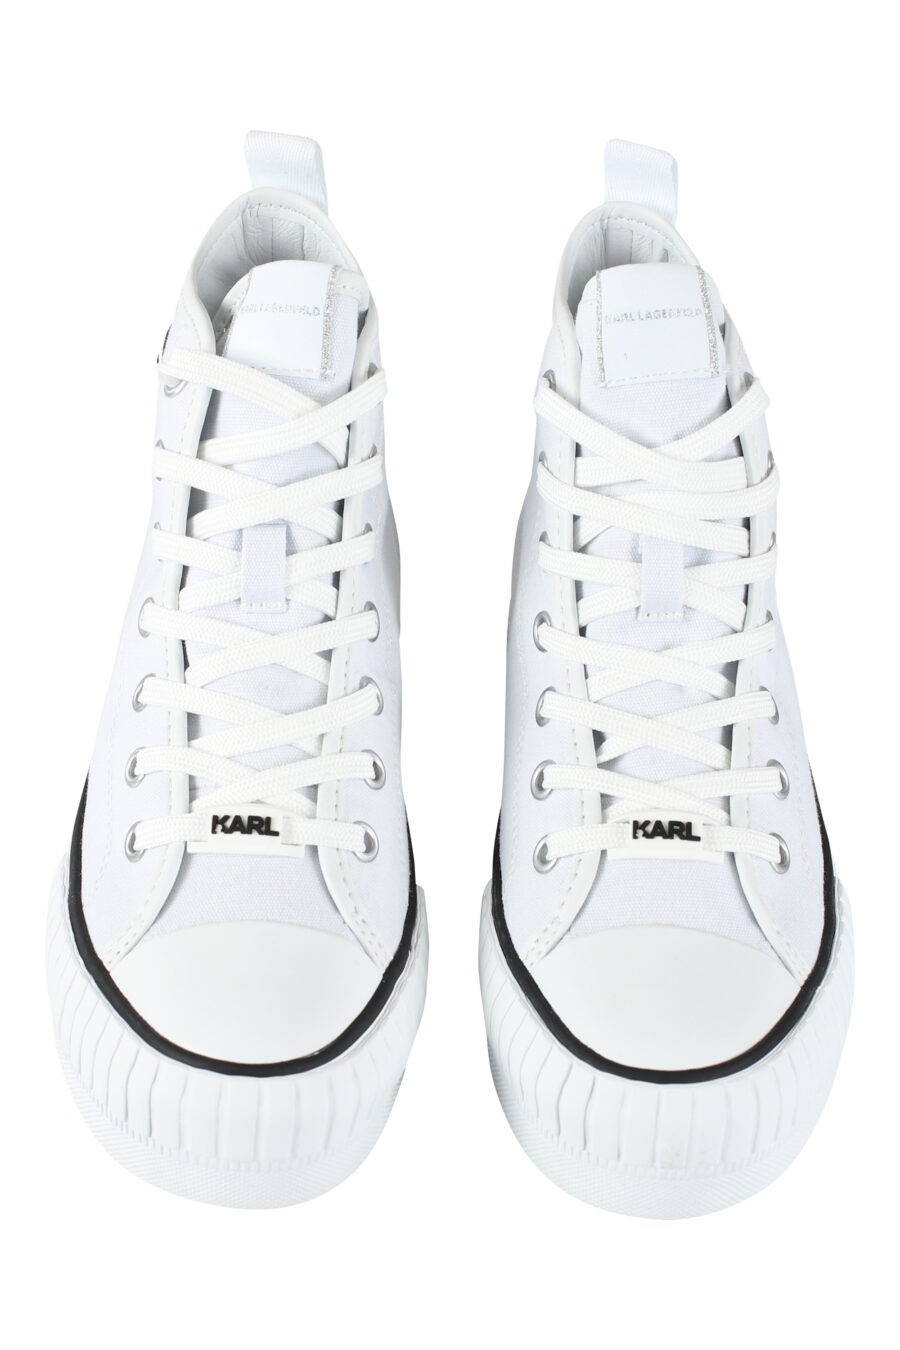 Zapatillas altas blancas estilo converse con logo "karl" en goma - IMG 9622